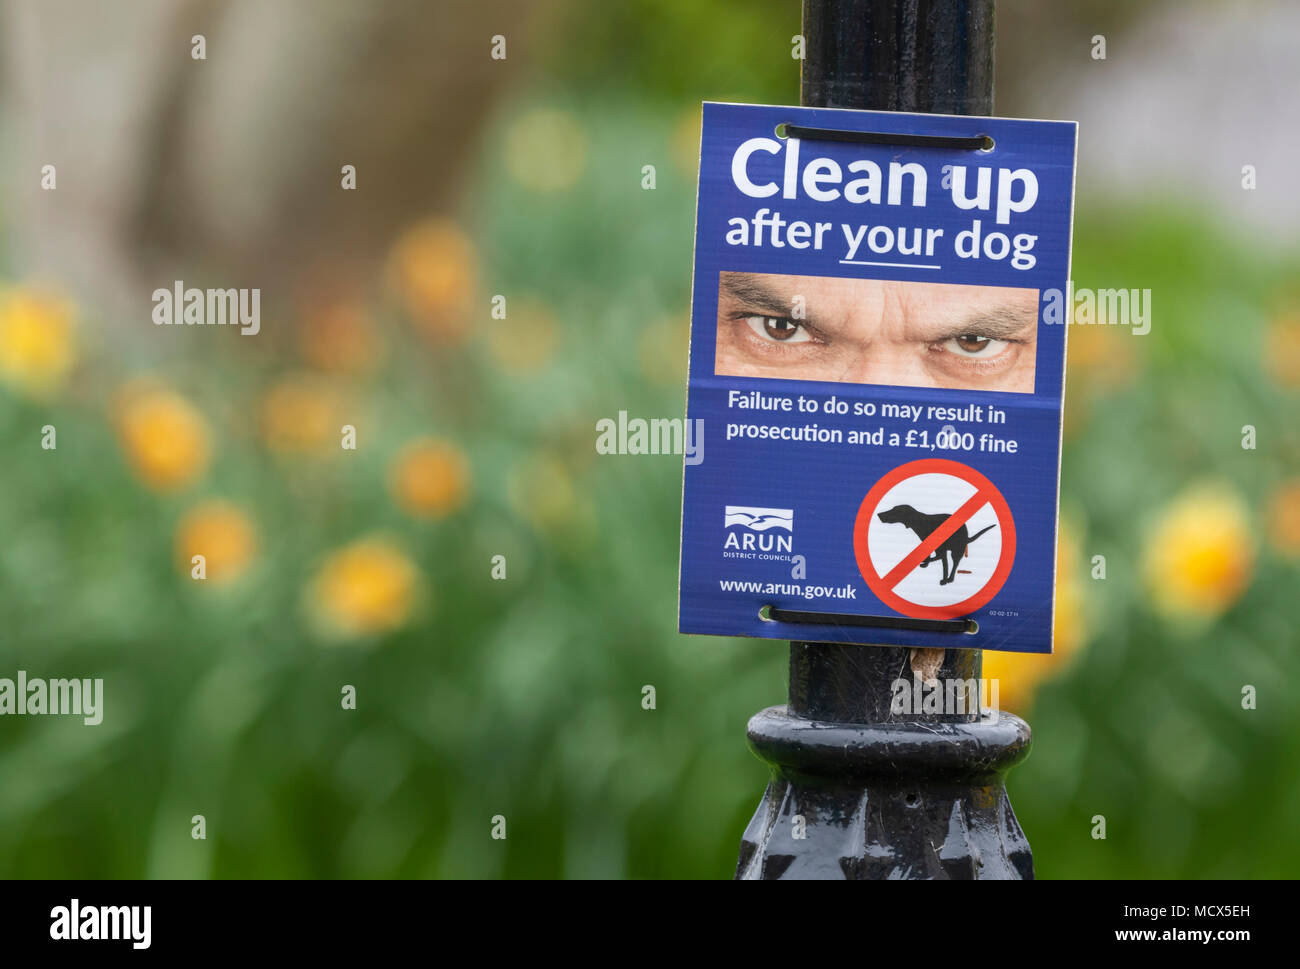 Panneau d'avertissement du Conseil pour nettoyer après que votre chien n'a poo, à Littlehampton, West Sussex, Angleterre, Royaume-Uni. Banque D'Images